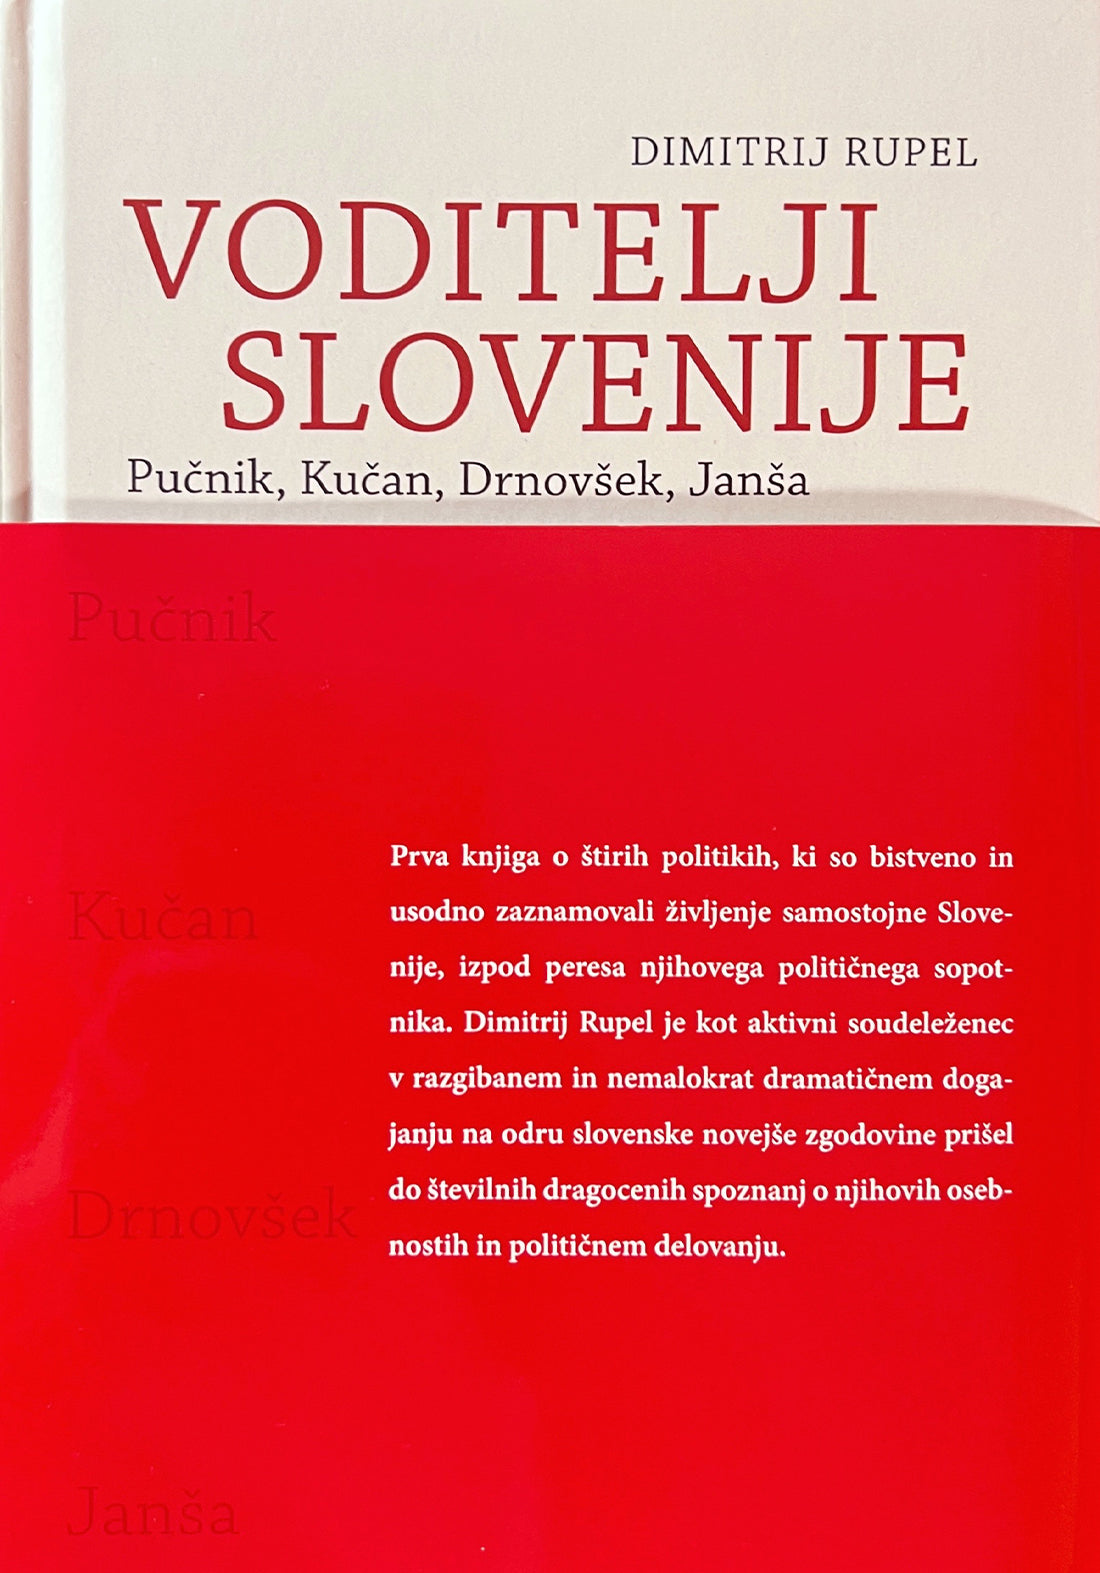 Voditelji Slovenije